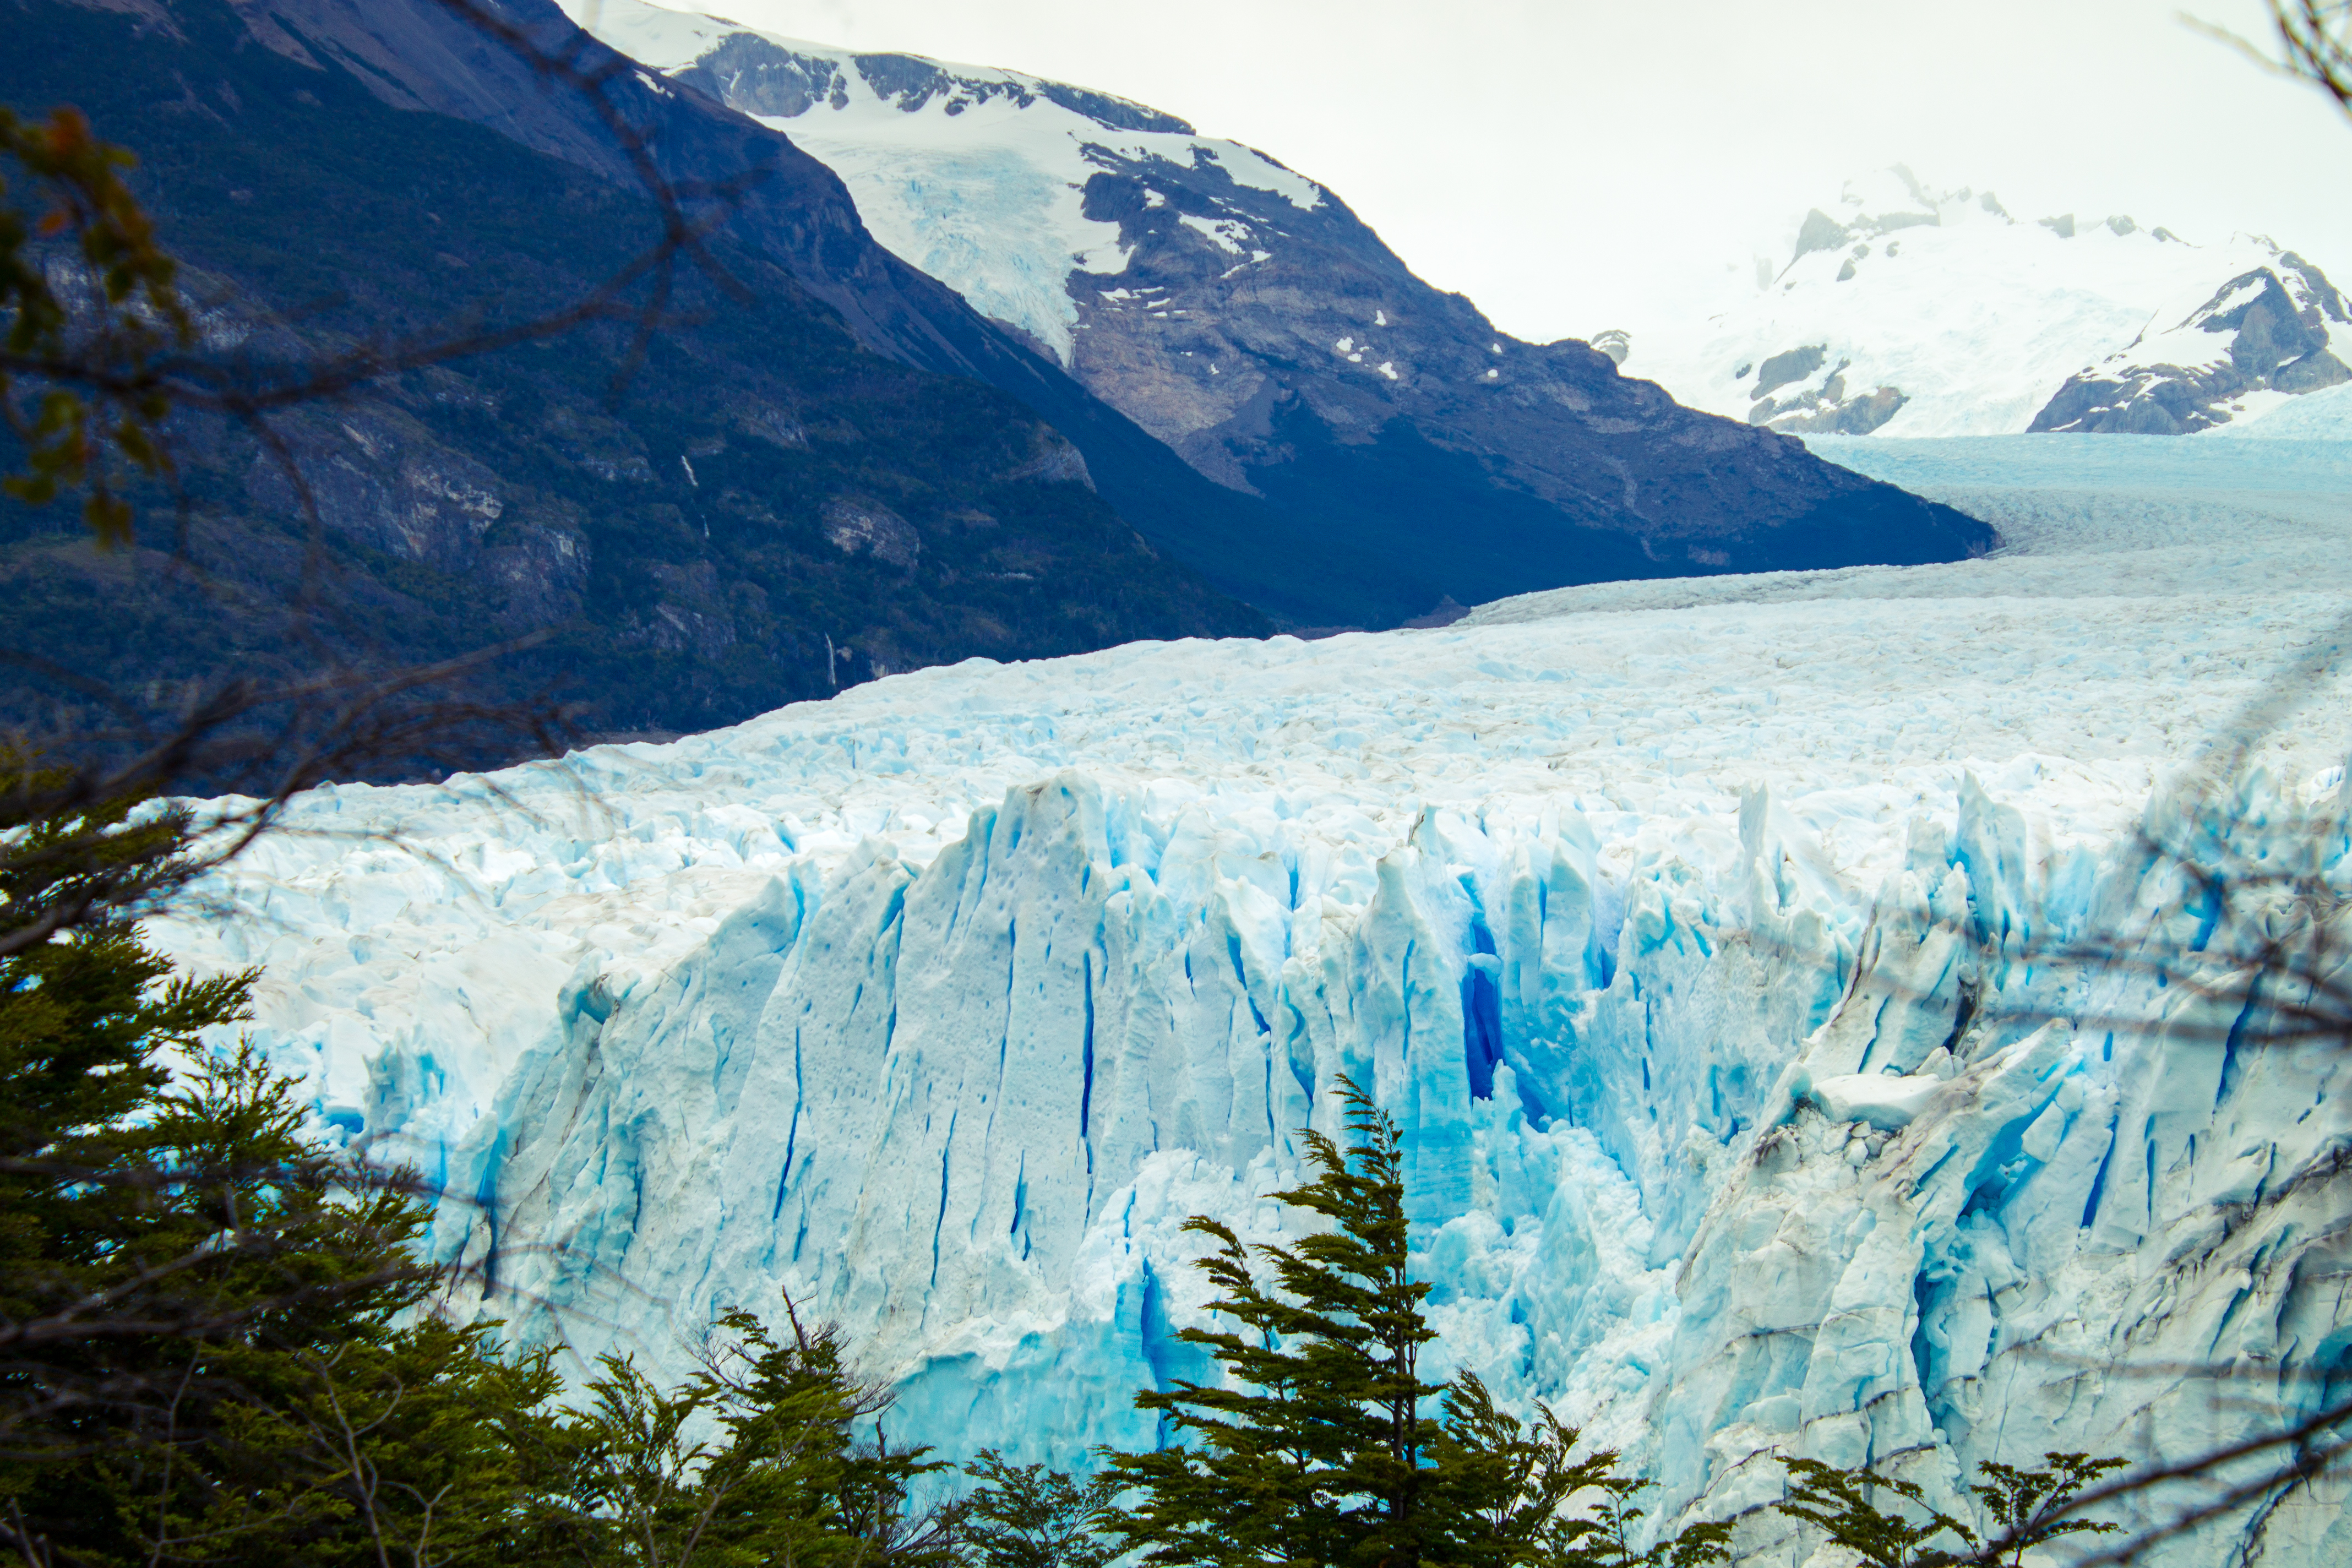 La localidad de El Calafate se encuentra ubicada sobre la margen sur del Lago Argentino, y es único punto de acceso al Glaciar Perito Moreno (Getty Images)